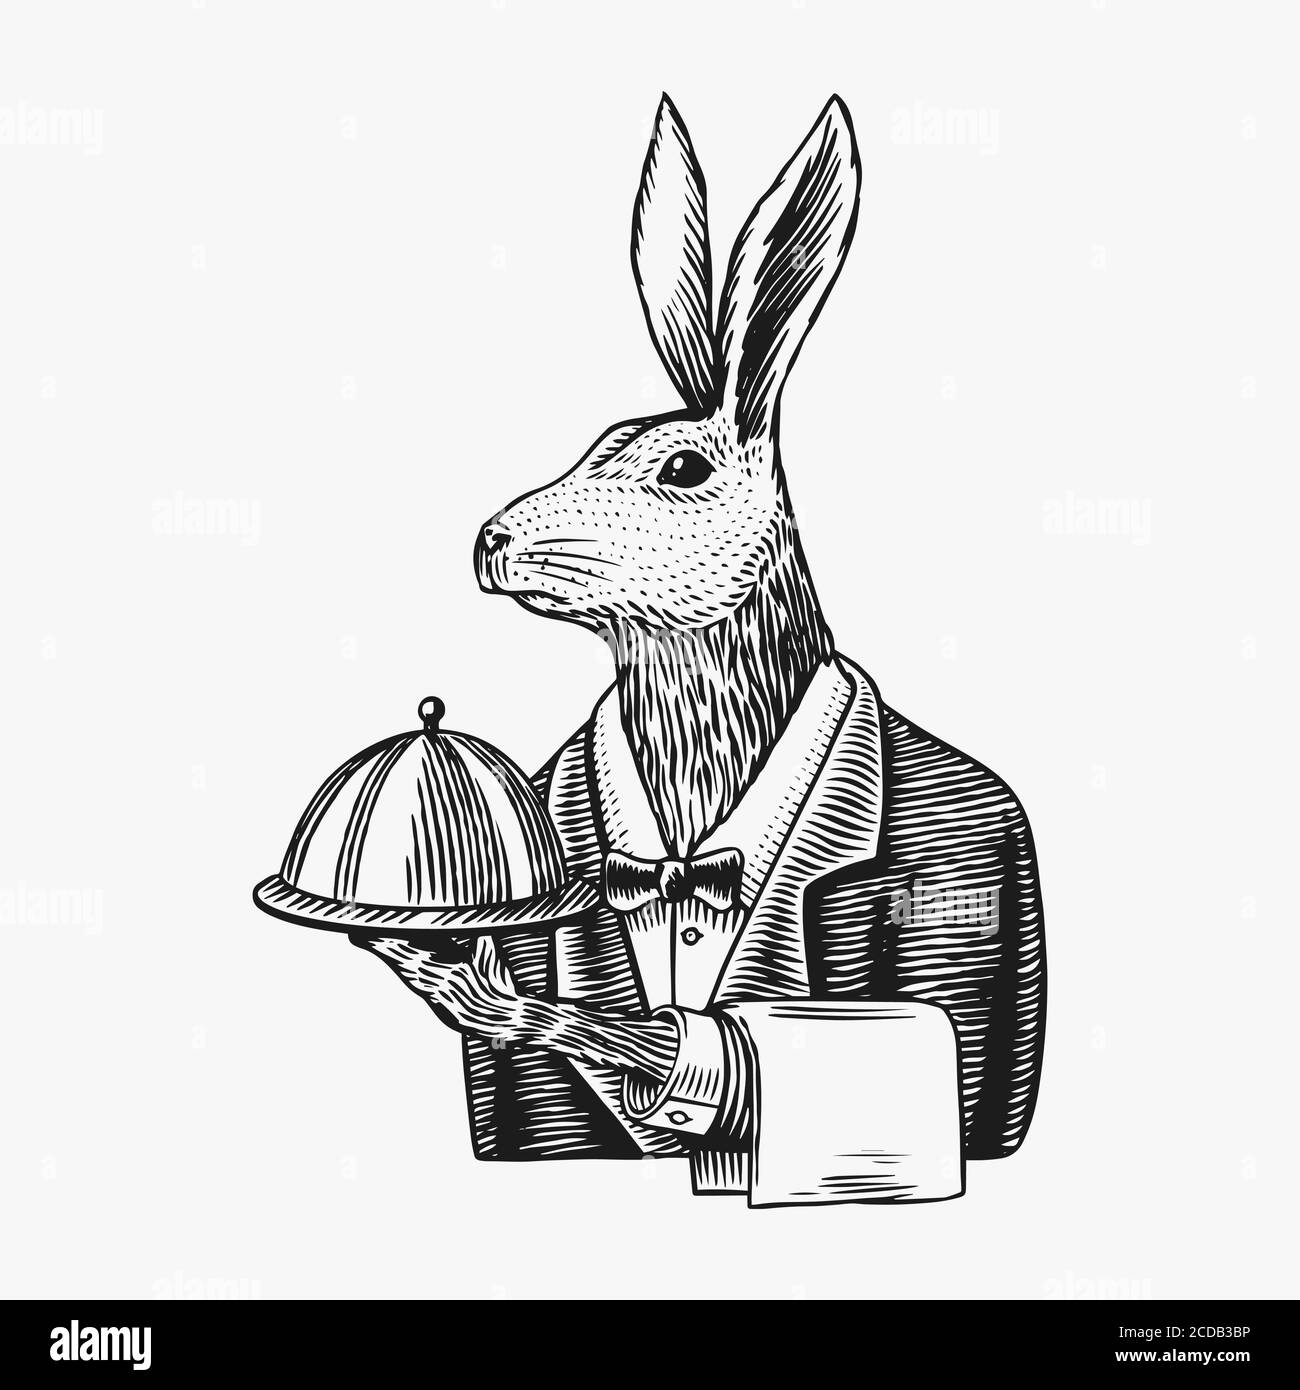 Il cameriere di Lepre con un piatto. Coniglio flunky o garcon. Carattere animale di moda. Schizzo disegnato a mano. Immagine vettoriale incisa per logo, etichetta e tatuaggio Illustrazione Vettoriale